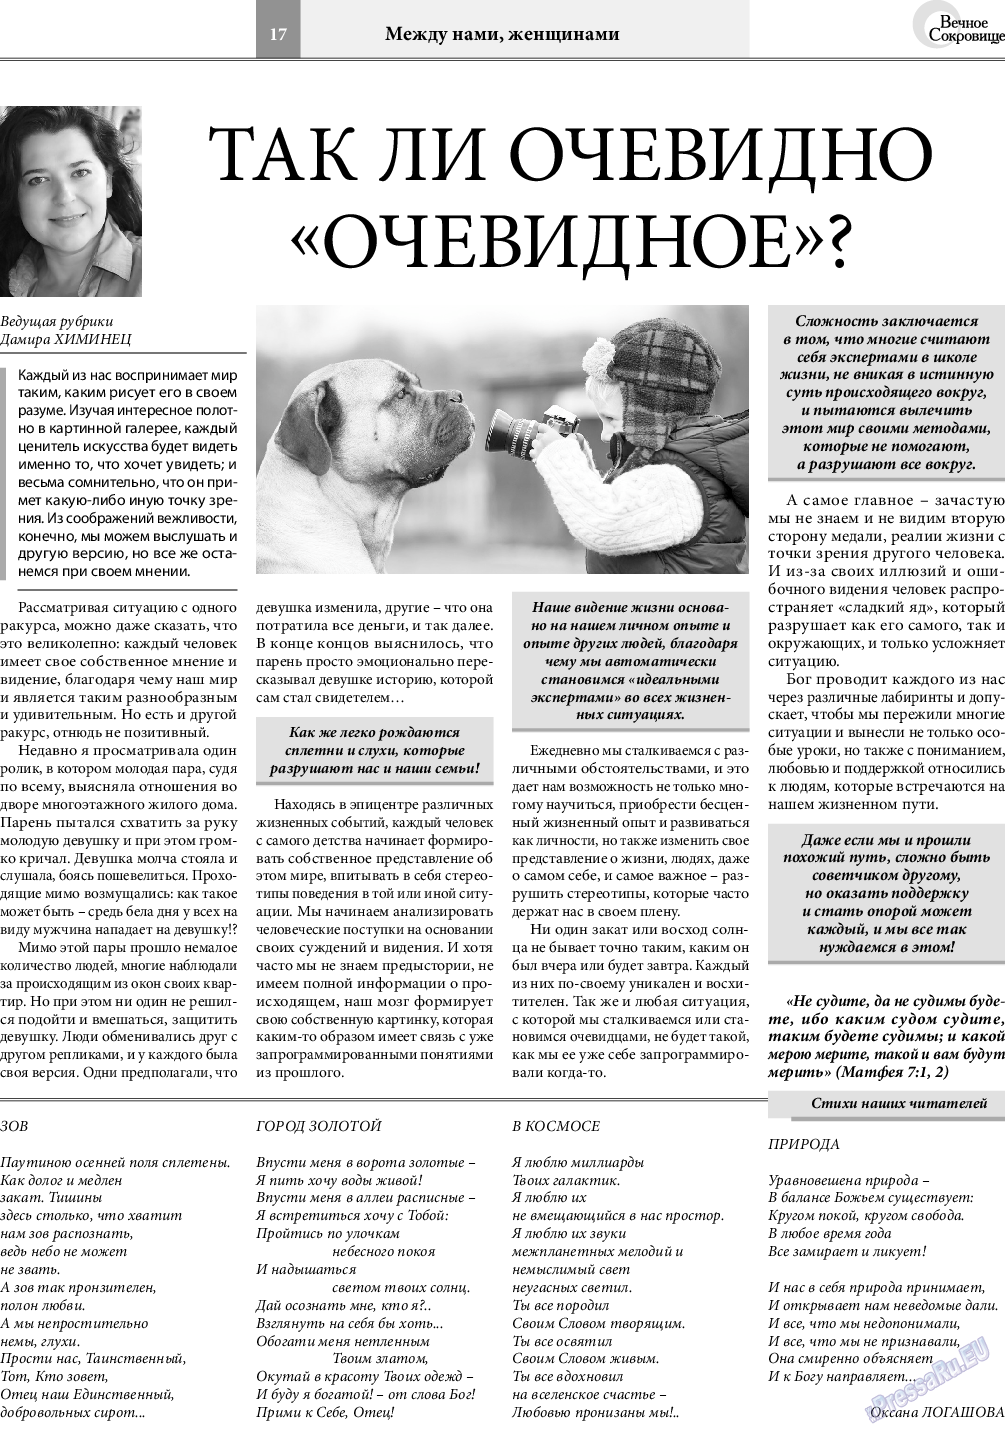 Вечное сокровище, газета. 2019 №2 стр.17